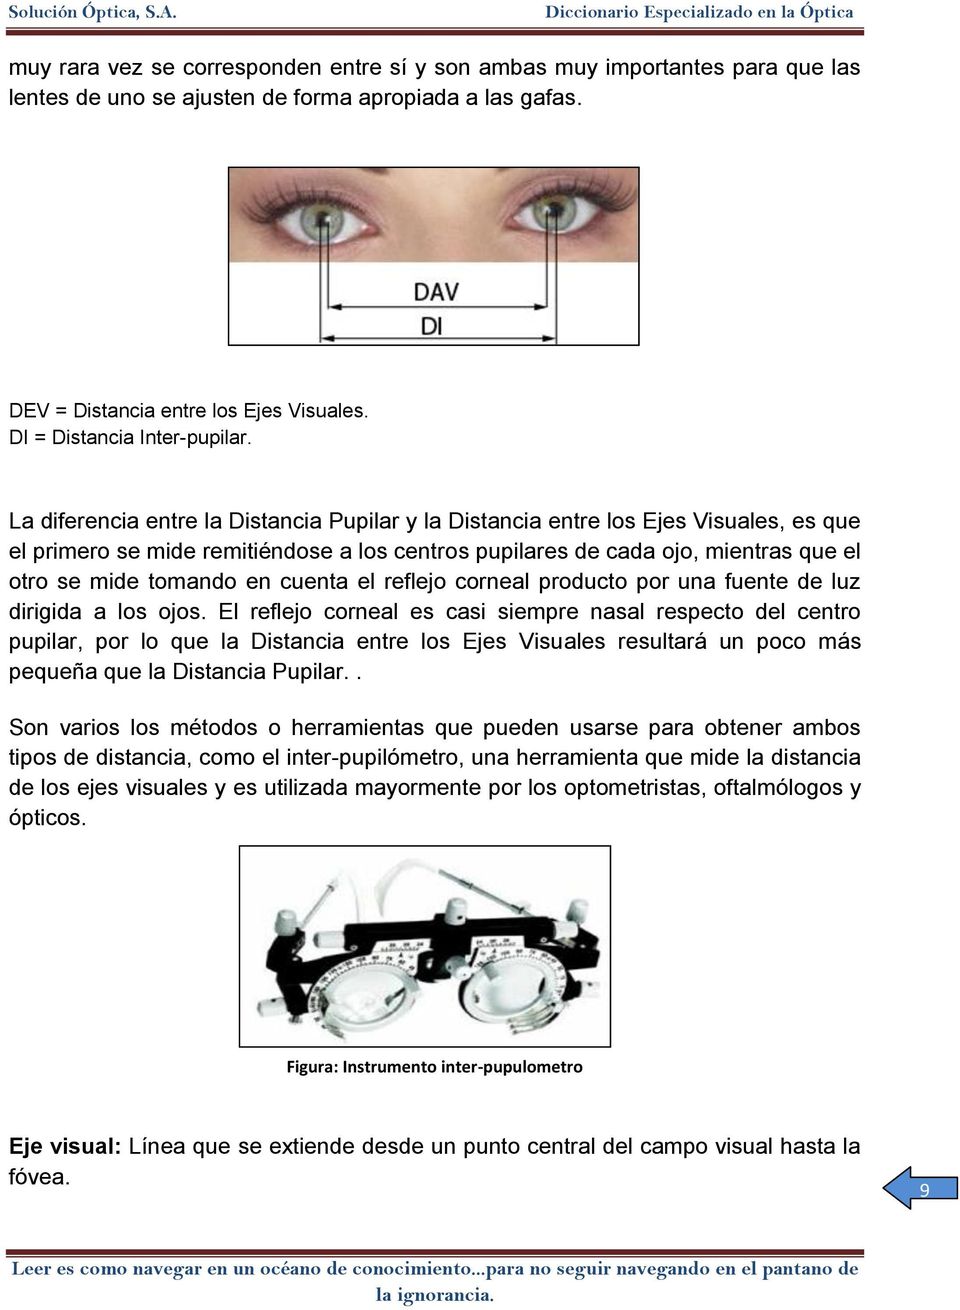 La diferencia entre la Distancia Pupilar y la Distancia entre los Ejes Visuales, es que el primero se mide remitiéndose a los centros pupilares de cada ojo, mientras que el otro se mide tomando en